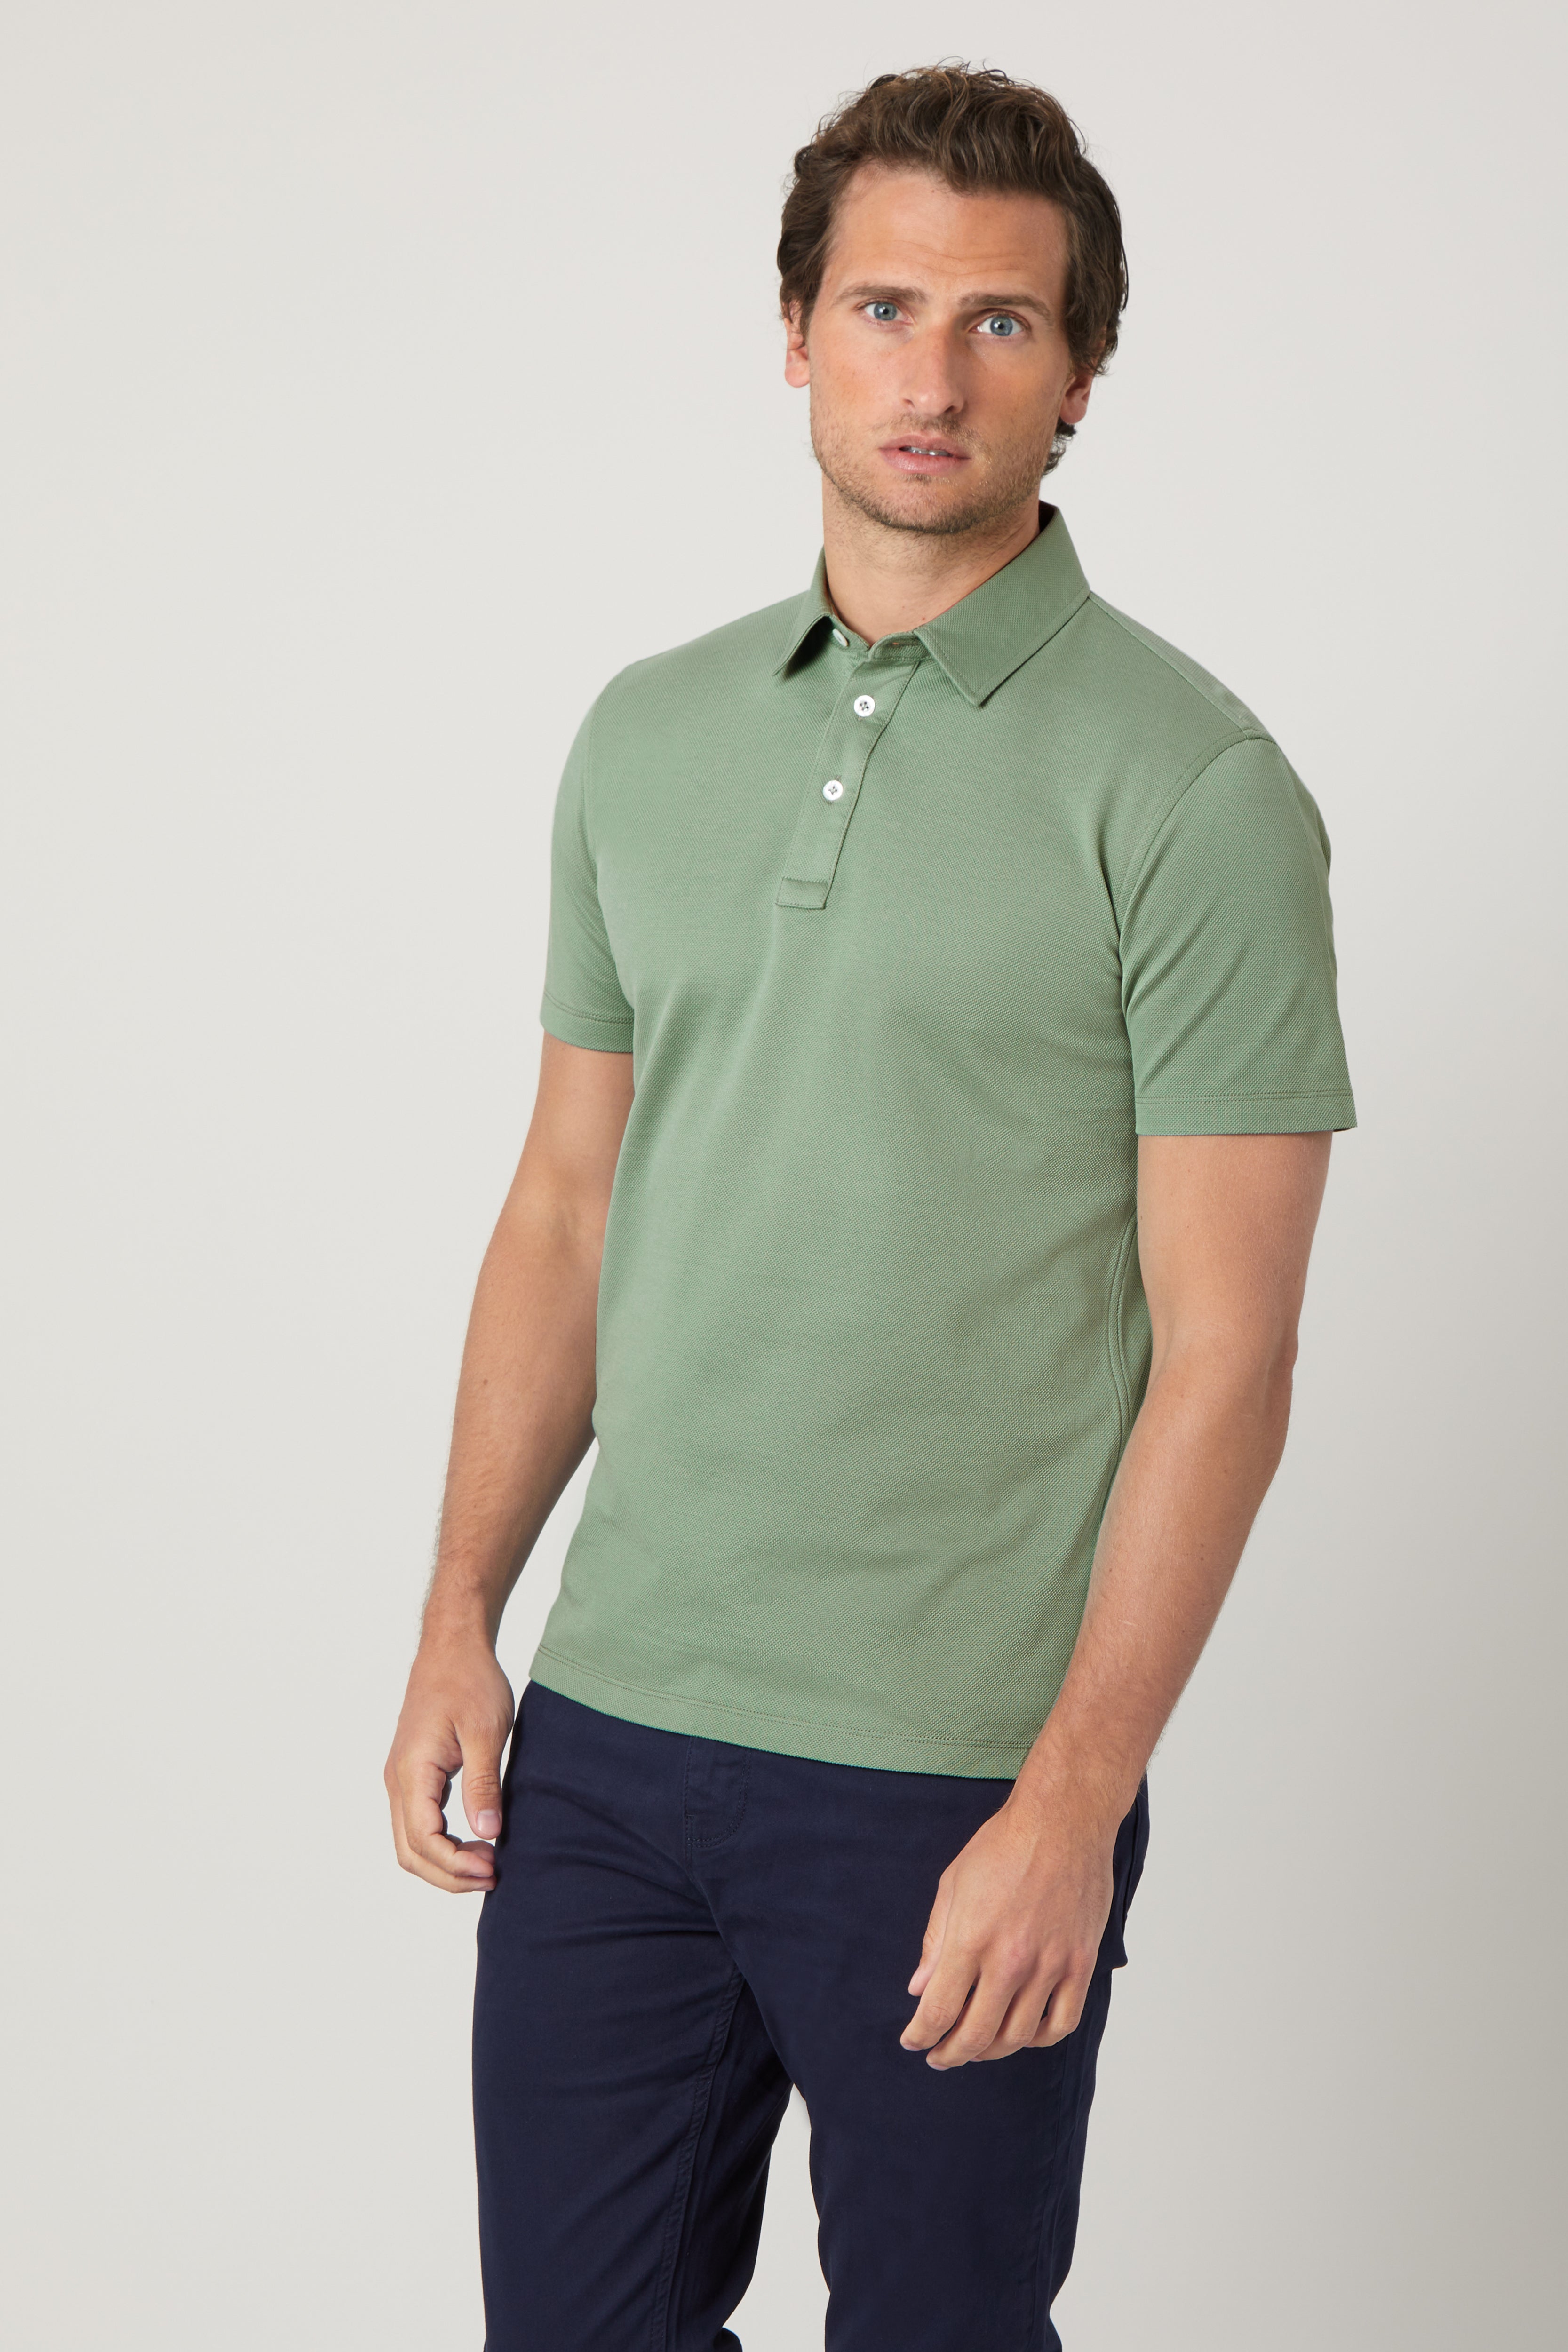 Polo Shirt - Egyptian Cotton - Jade Green | Niccolò P.